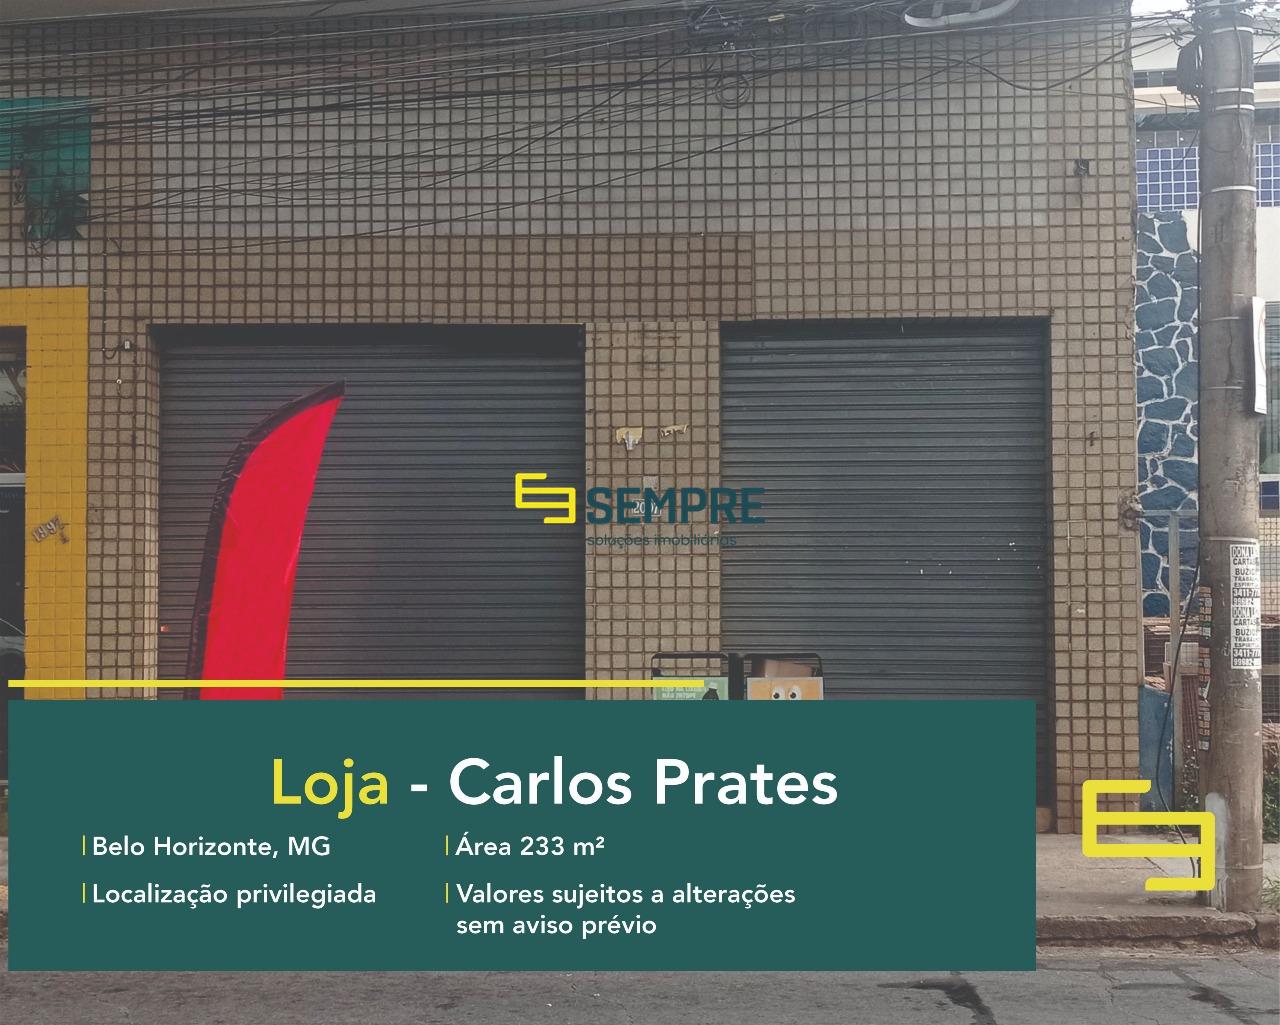 Loja para alugar em Belo Horizonte no bairro Carlos Prates, excelente localização. O estabelecimento comercial conta com área de 233 m².